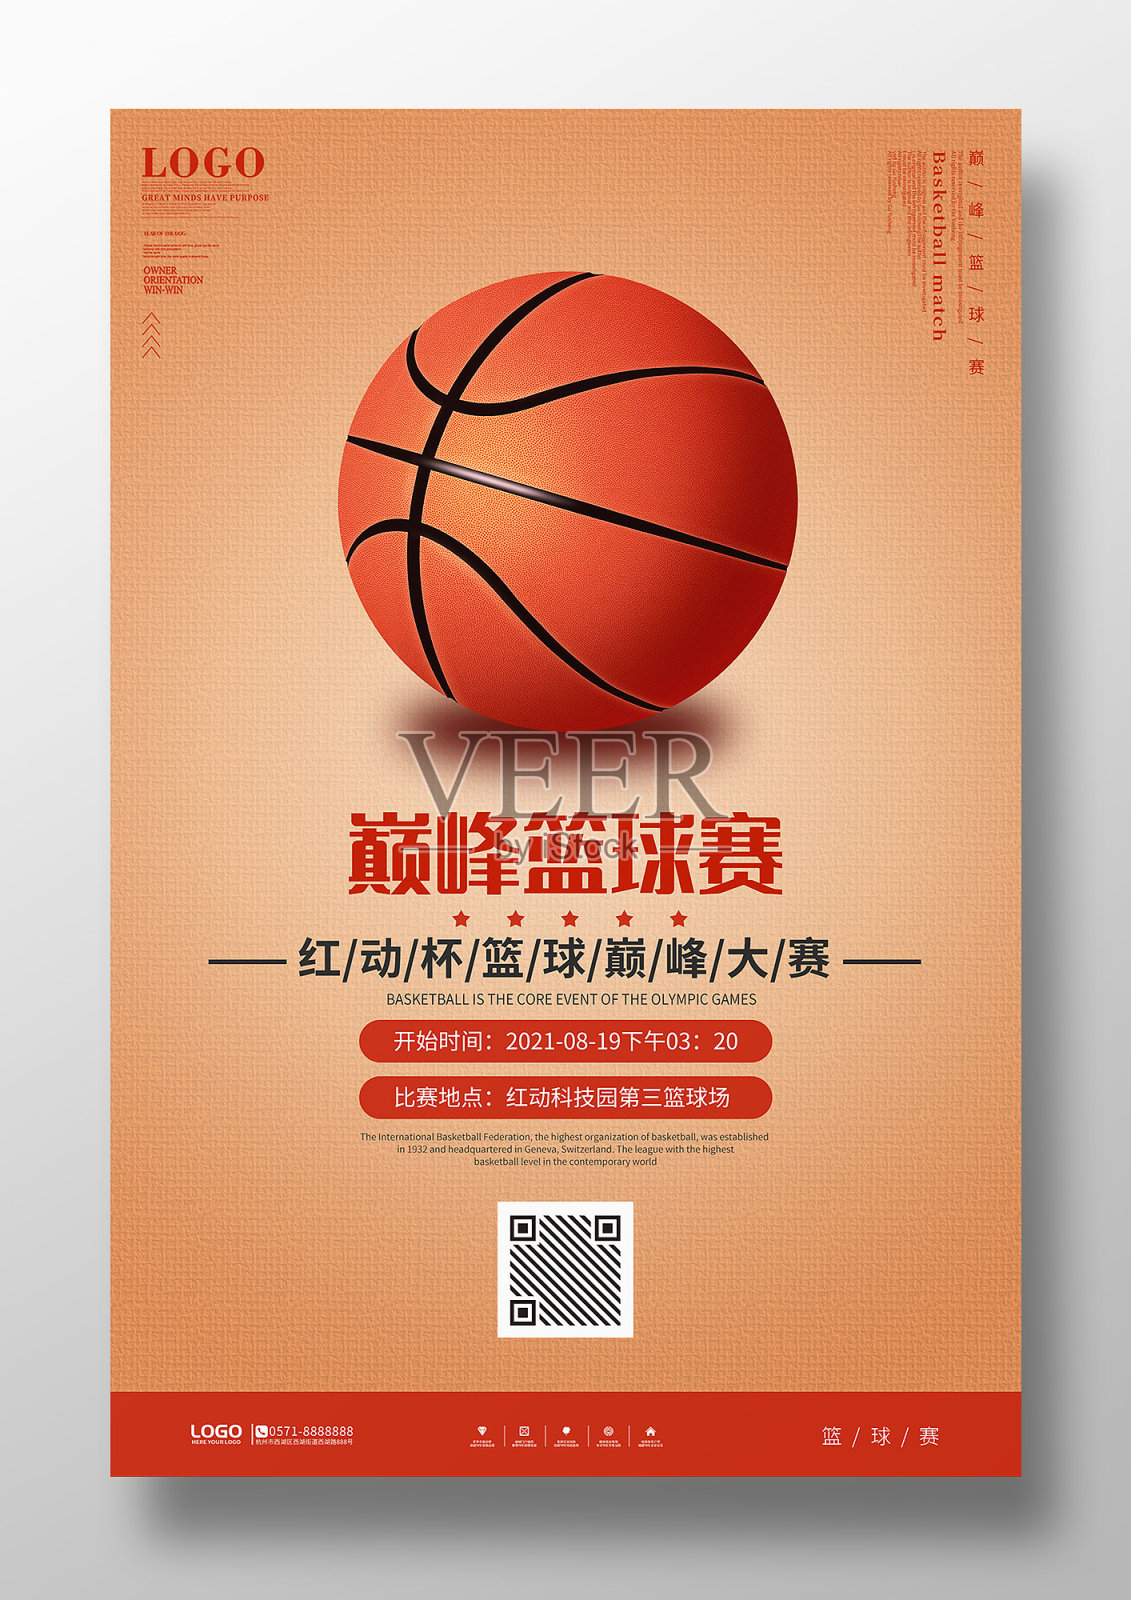 篮球比赛宣传海报设计模板素材